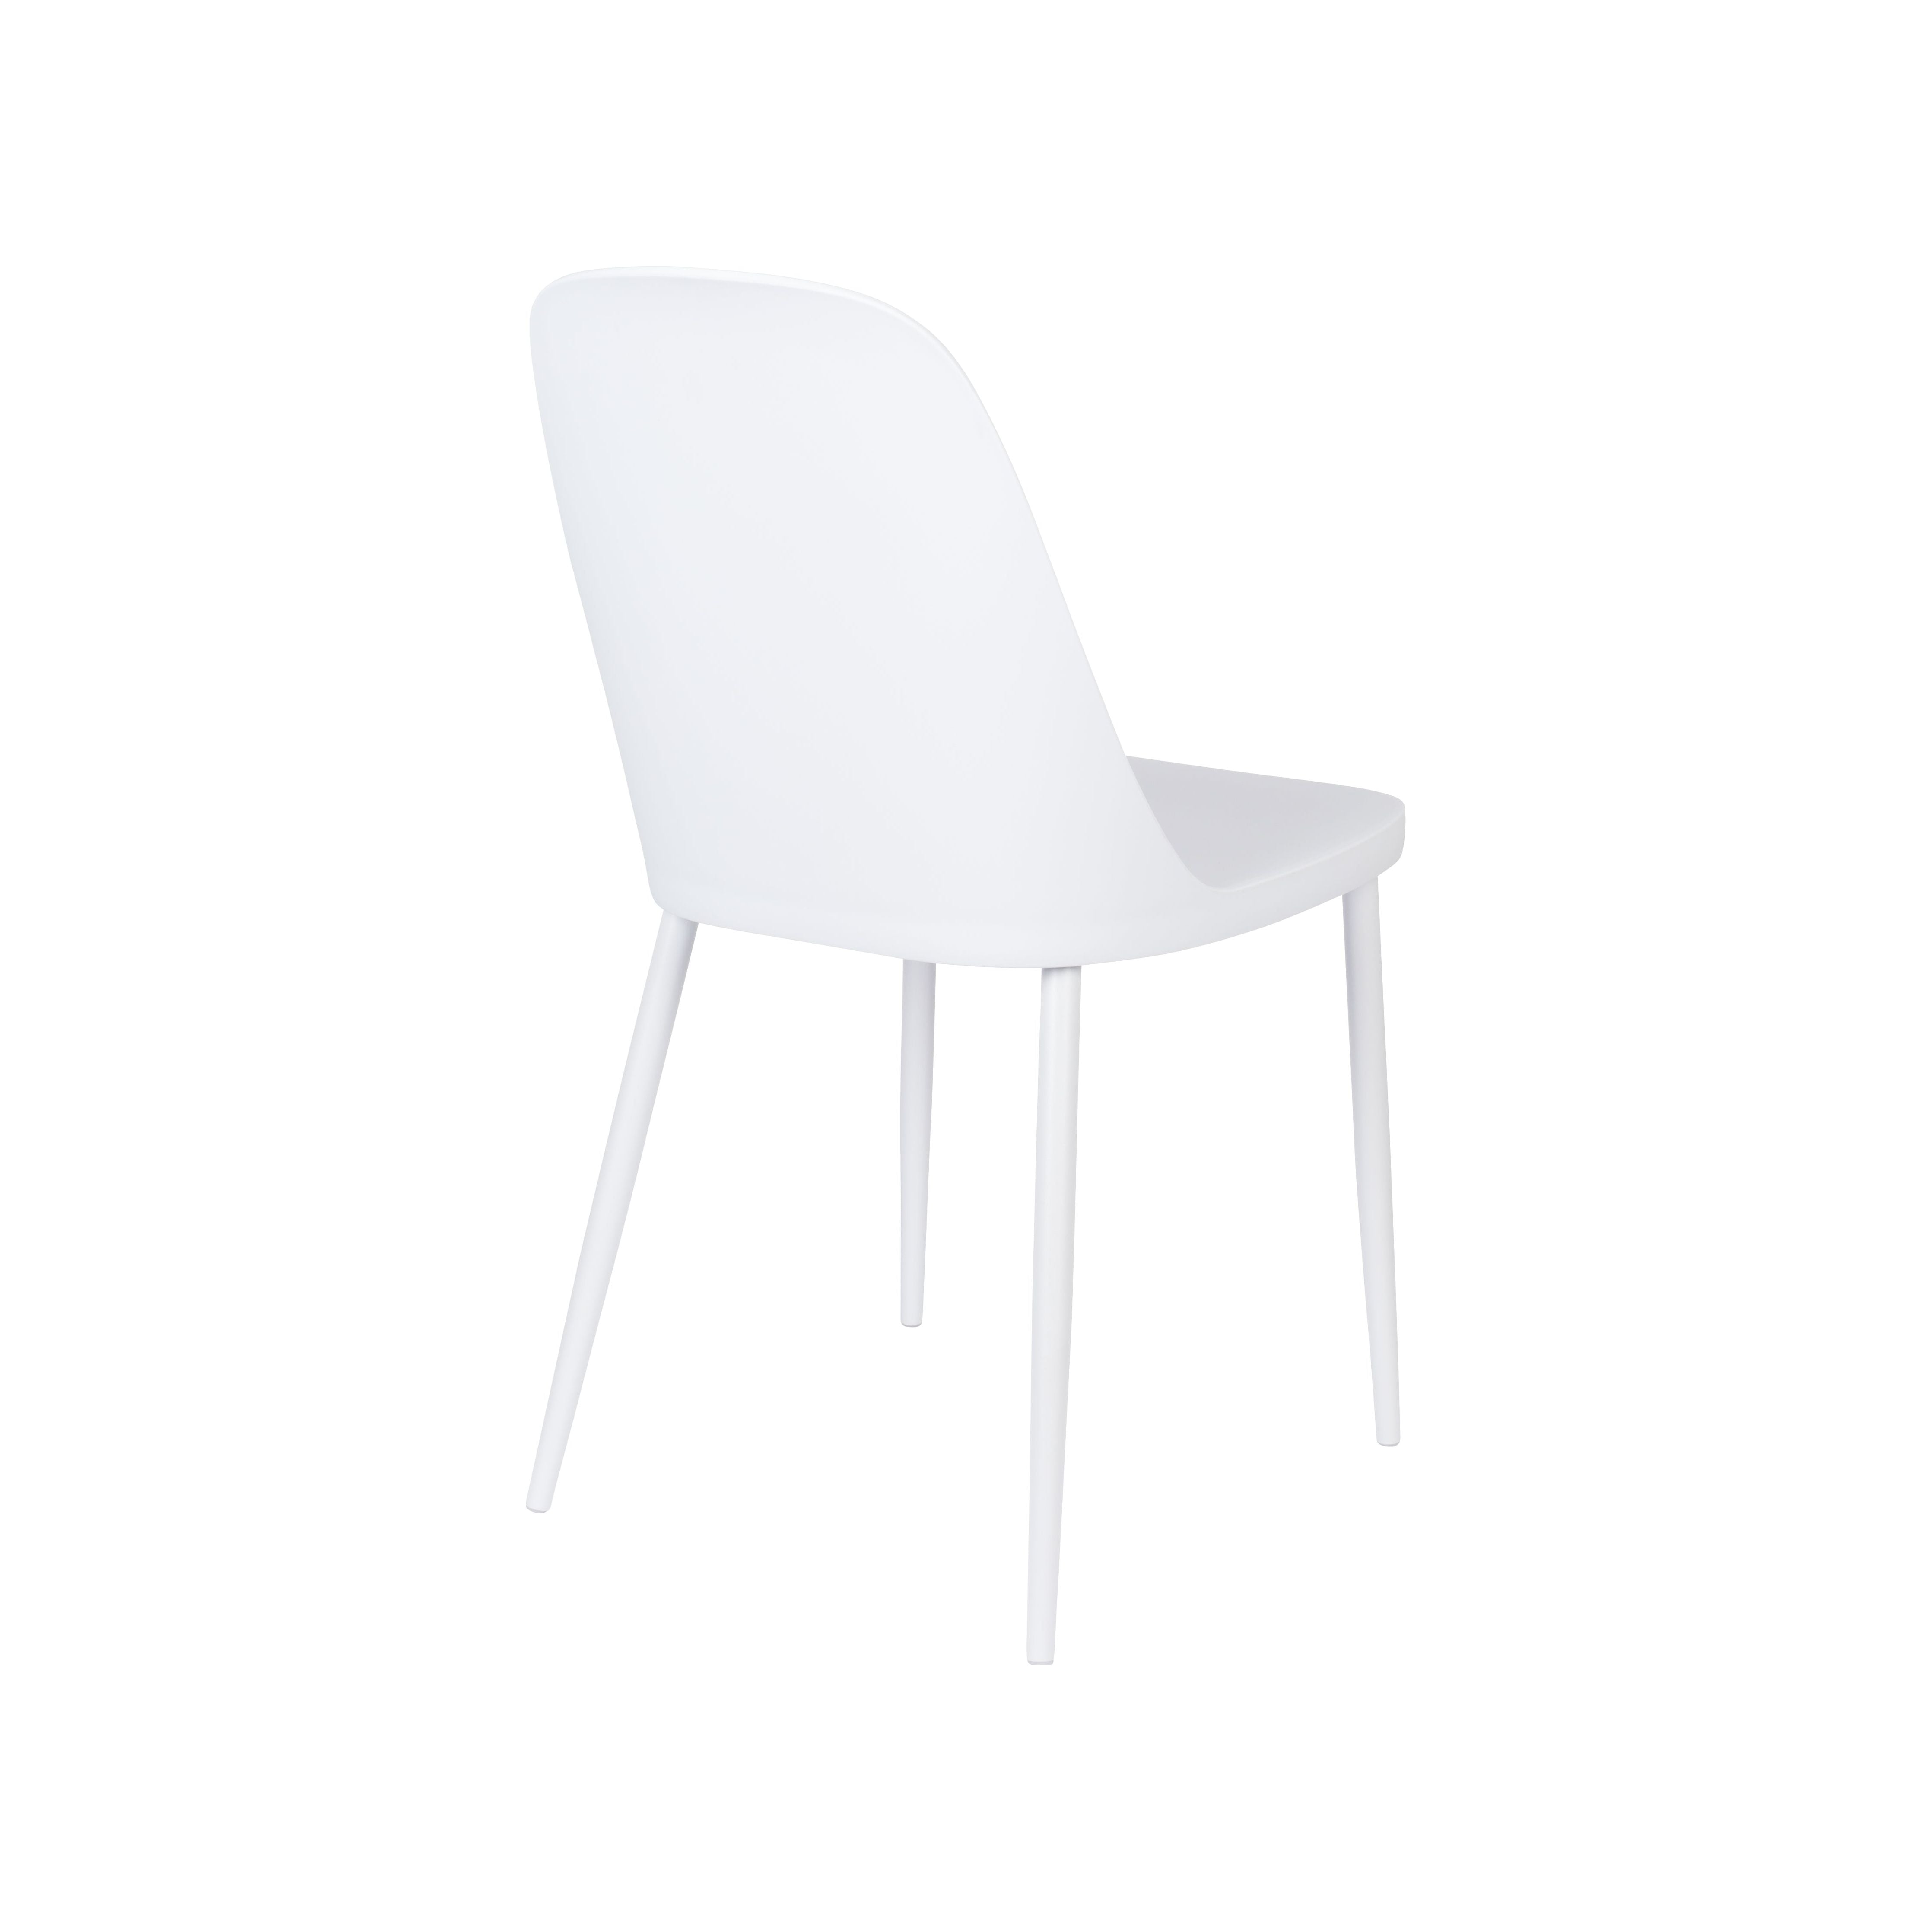 Chair pip all white